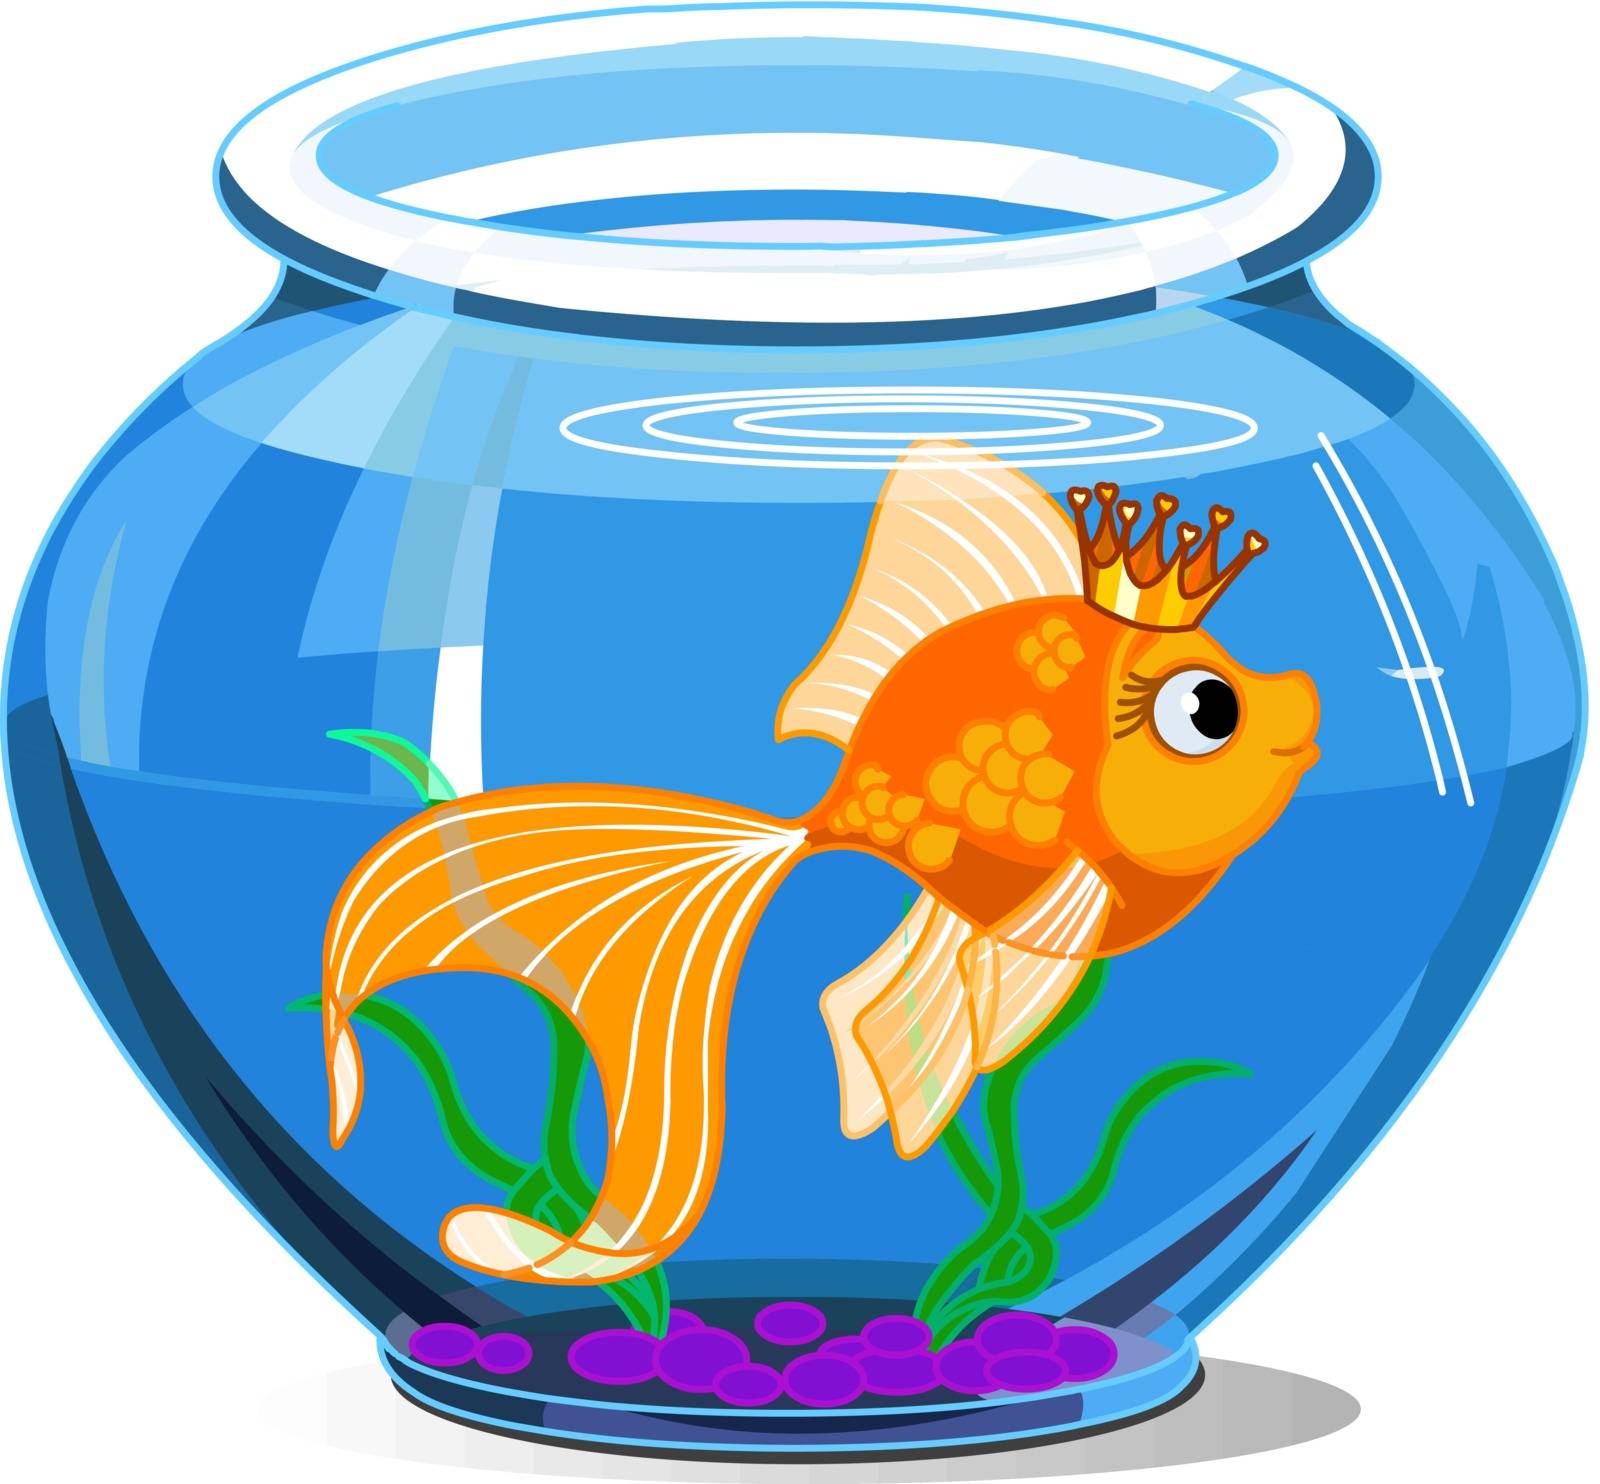 Gold fish in aquarium on white background